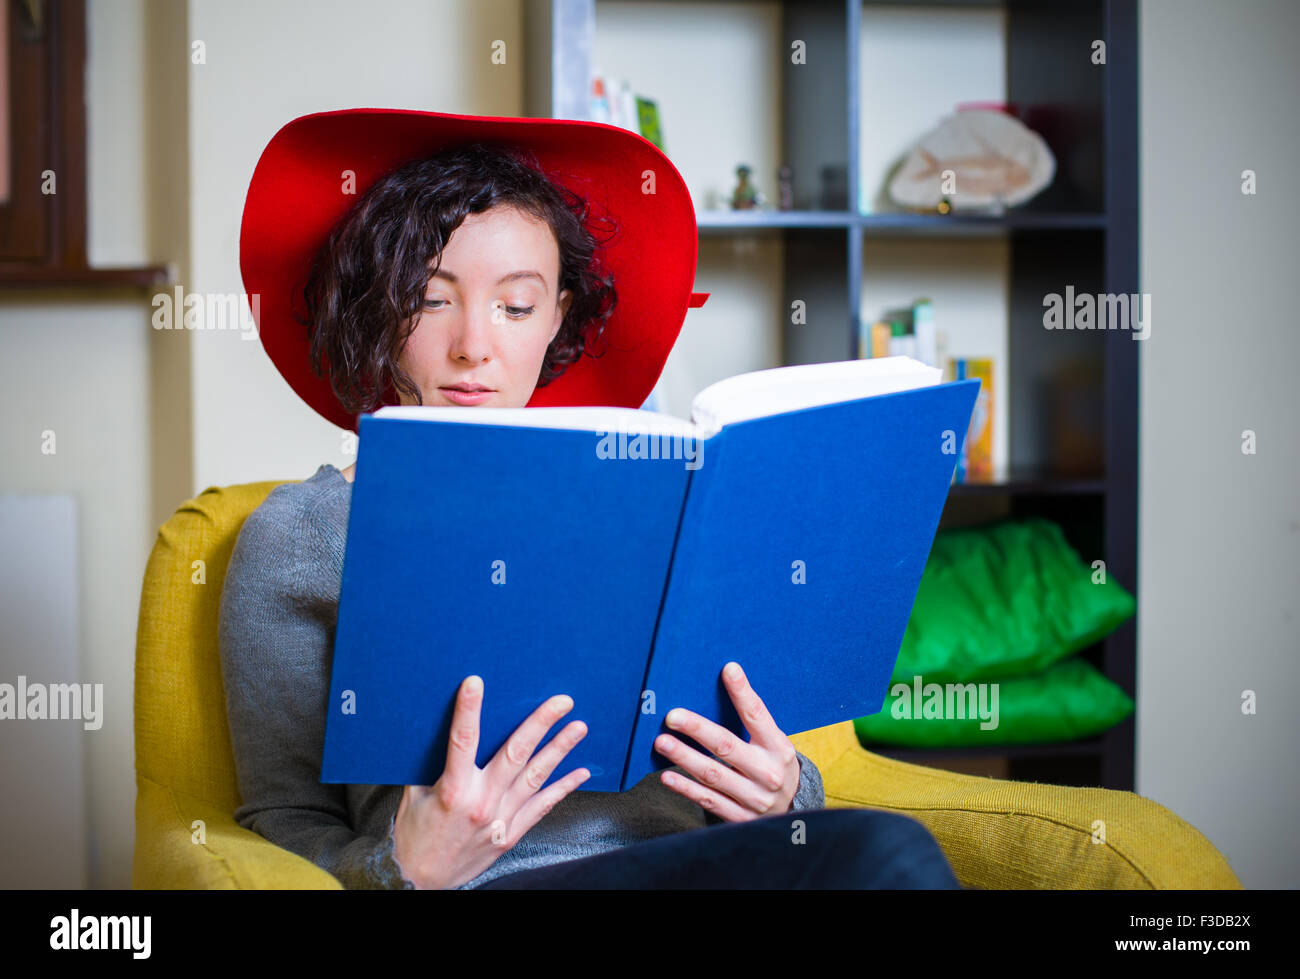 Jeune femme avec red hat de lire un livre avec couvercle bleu Banque D'Images